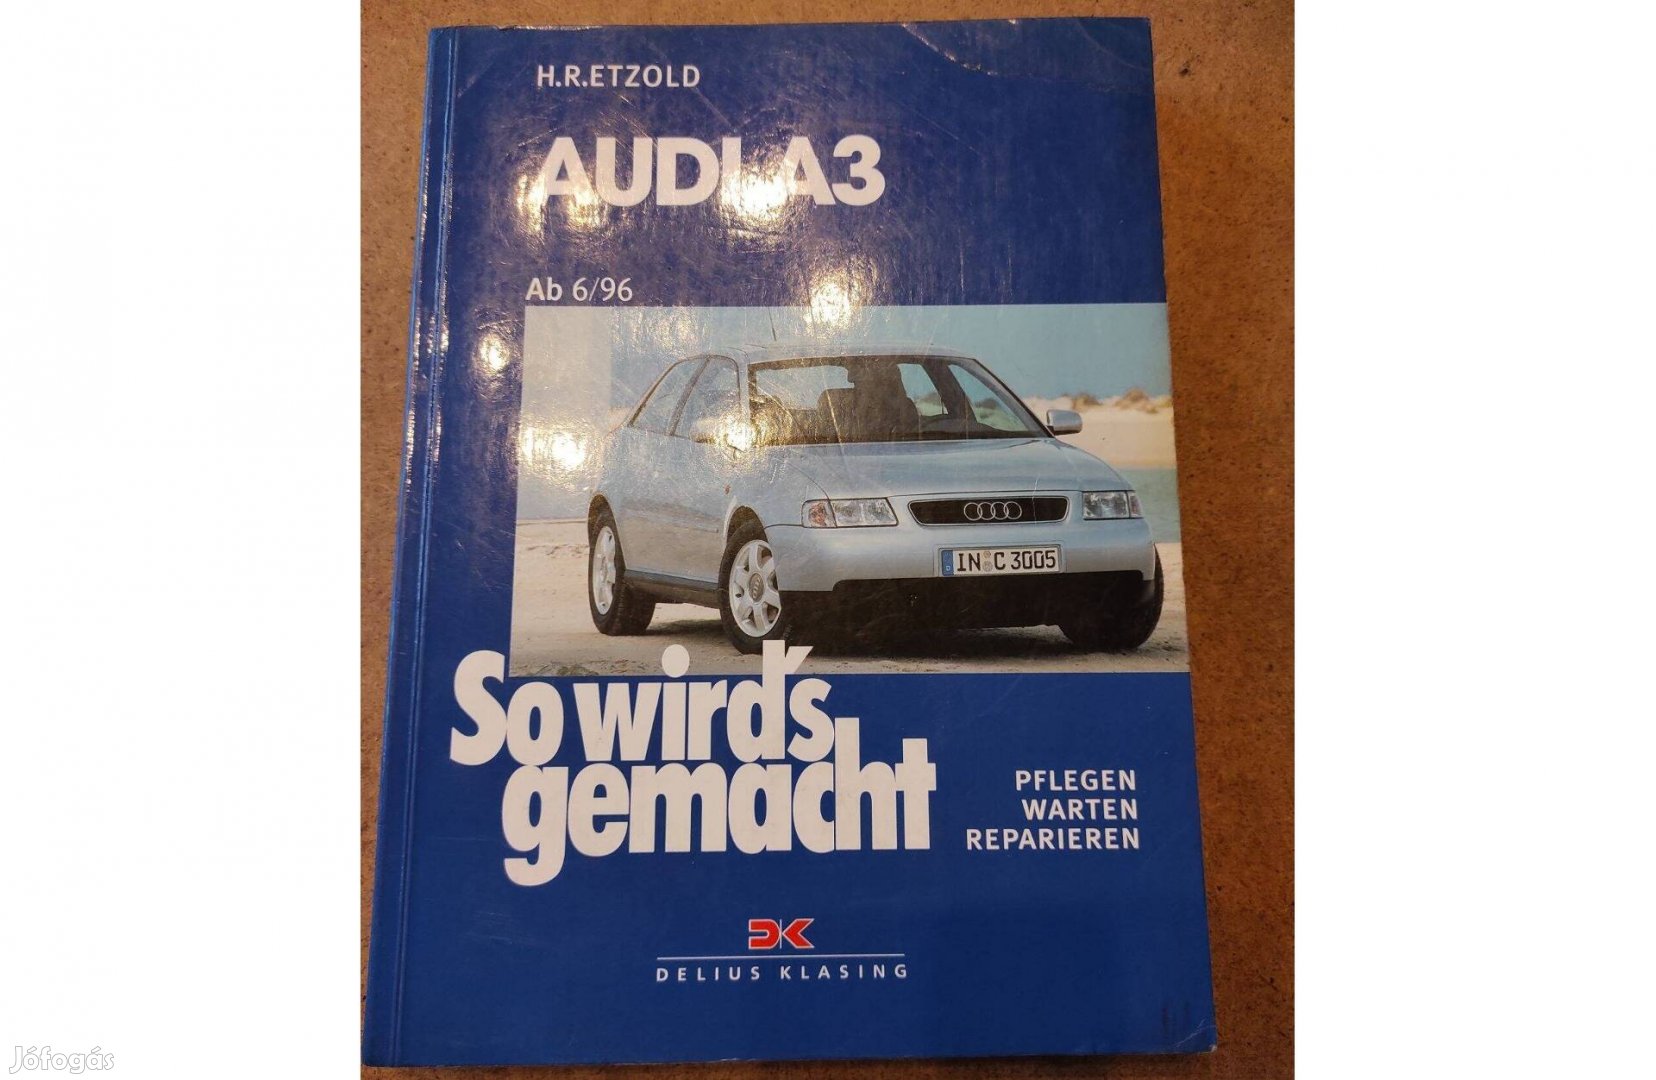 Audi A 3 javítási, karbantartási kézikönyv